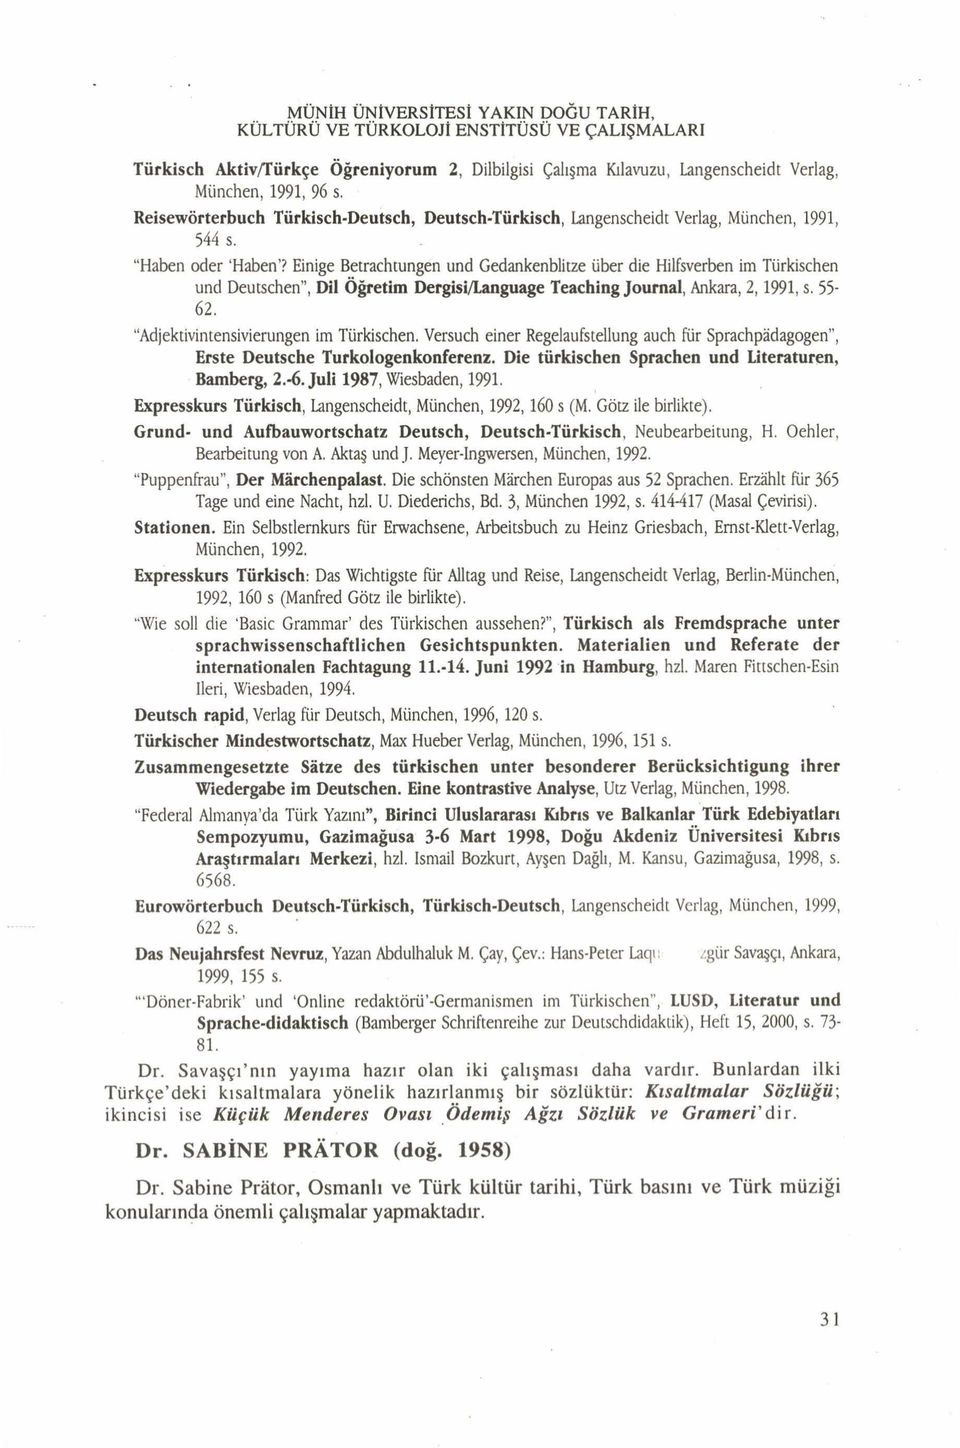 Einige Betrachtungen und Gedankenblitze über die Hilfsverben im Türkischen und Deutschen, Dil Öğretim Dergisi/Language Teaching Journal, Ankara, 2,1991, s. 55-62.